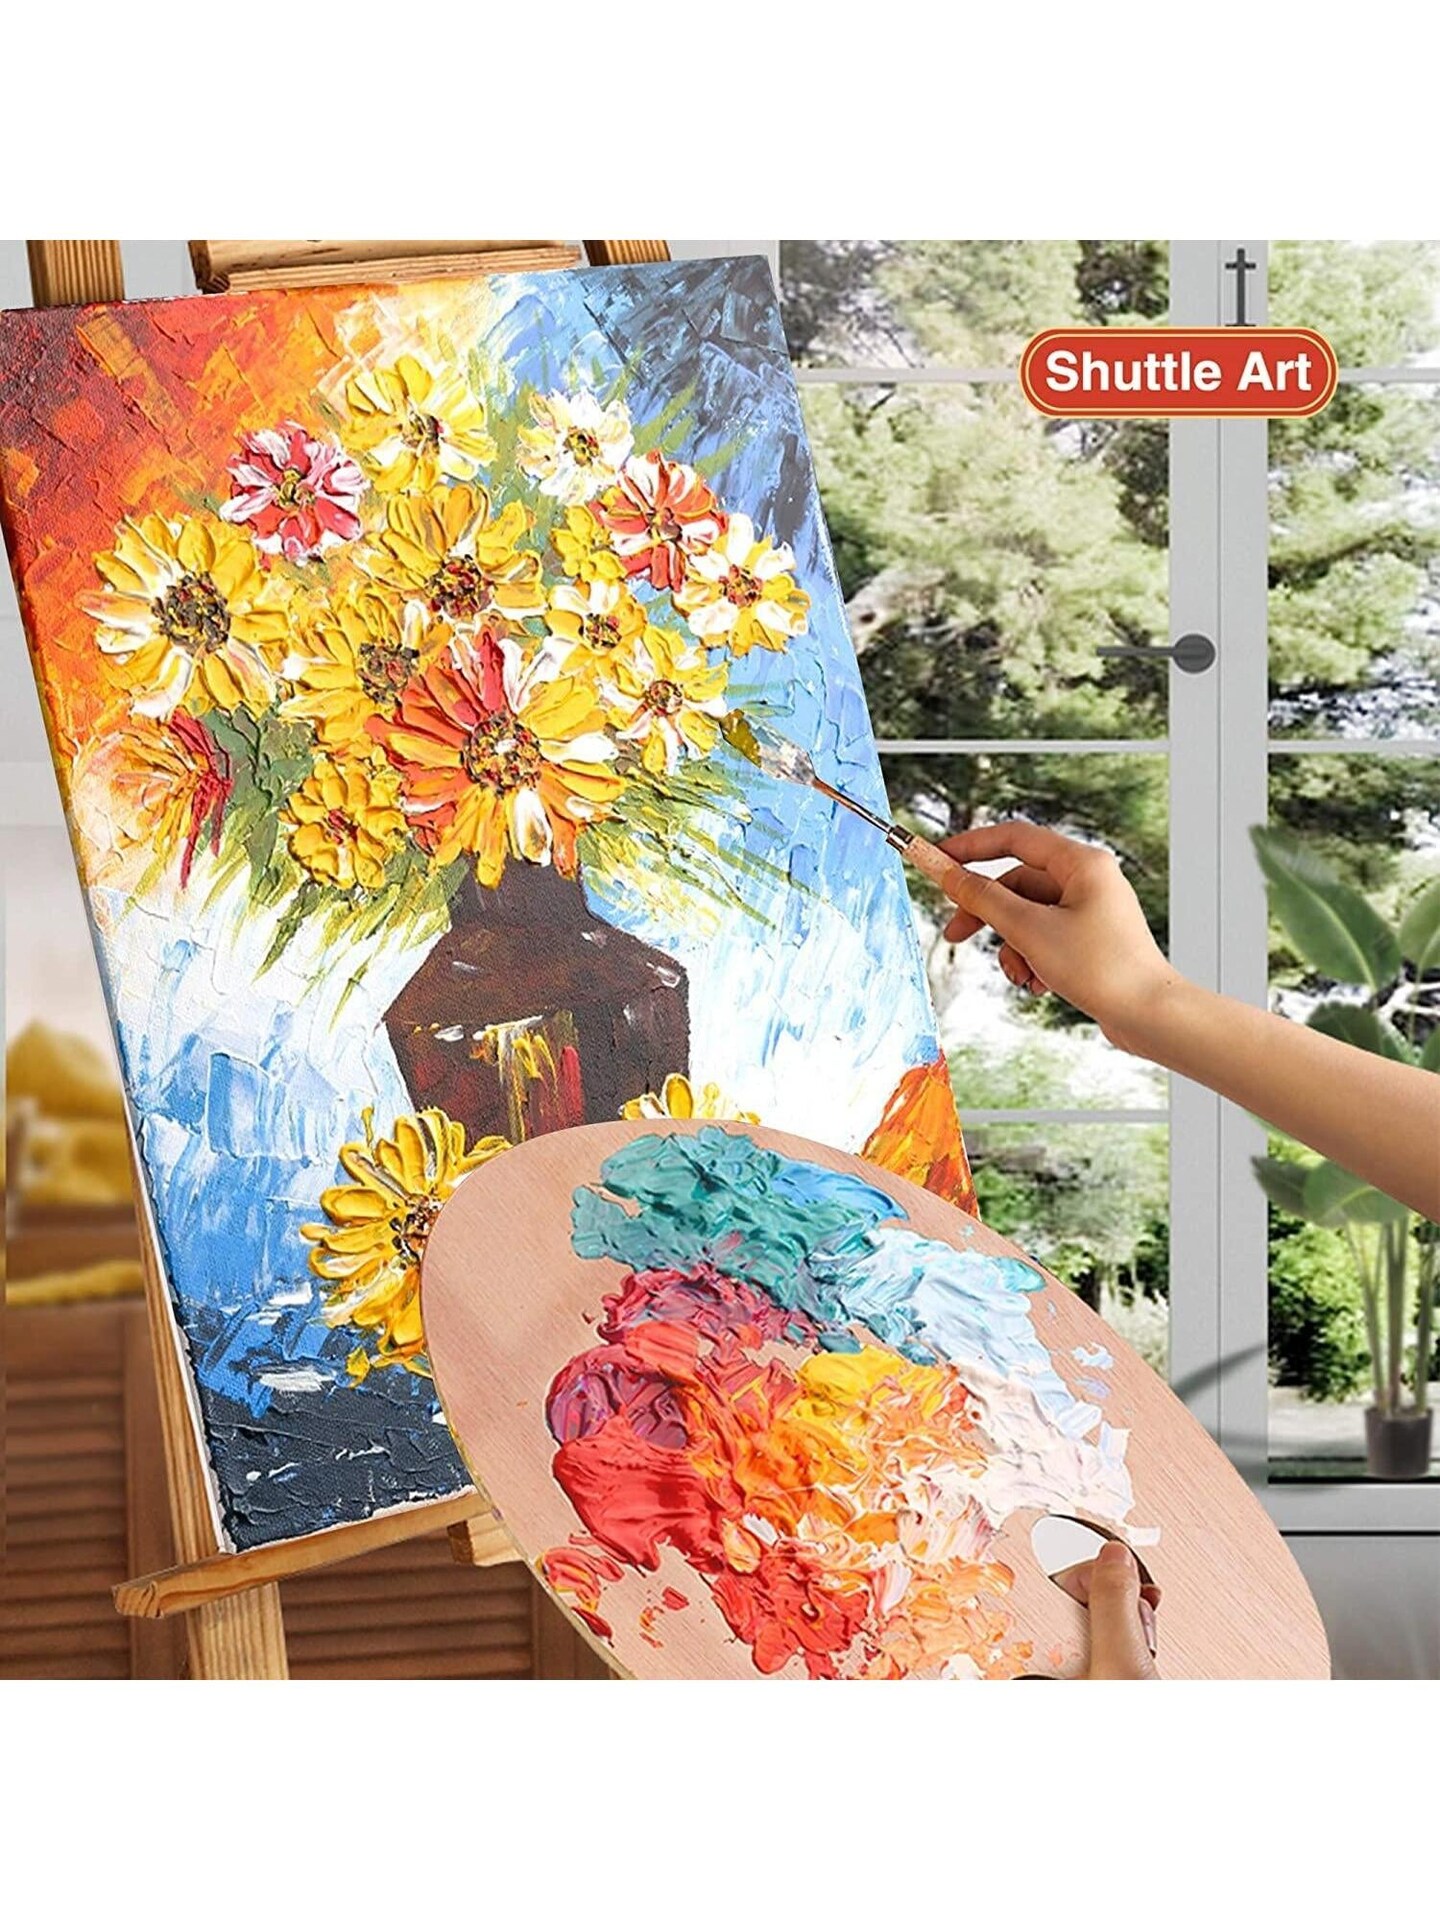 Shuttle Art Acrylic Paint, 18 Colors Acrylic Paint Pouches (120ml/4.06oz),  Artist Grade Acrylic Paint Set, Rich Pigments, Non-Toxic for Artists